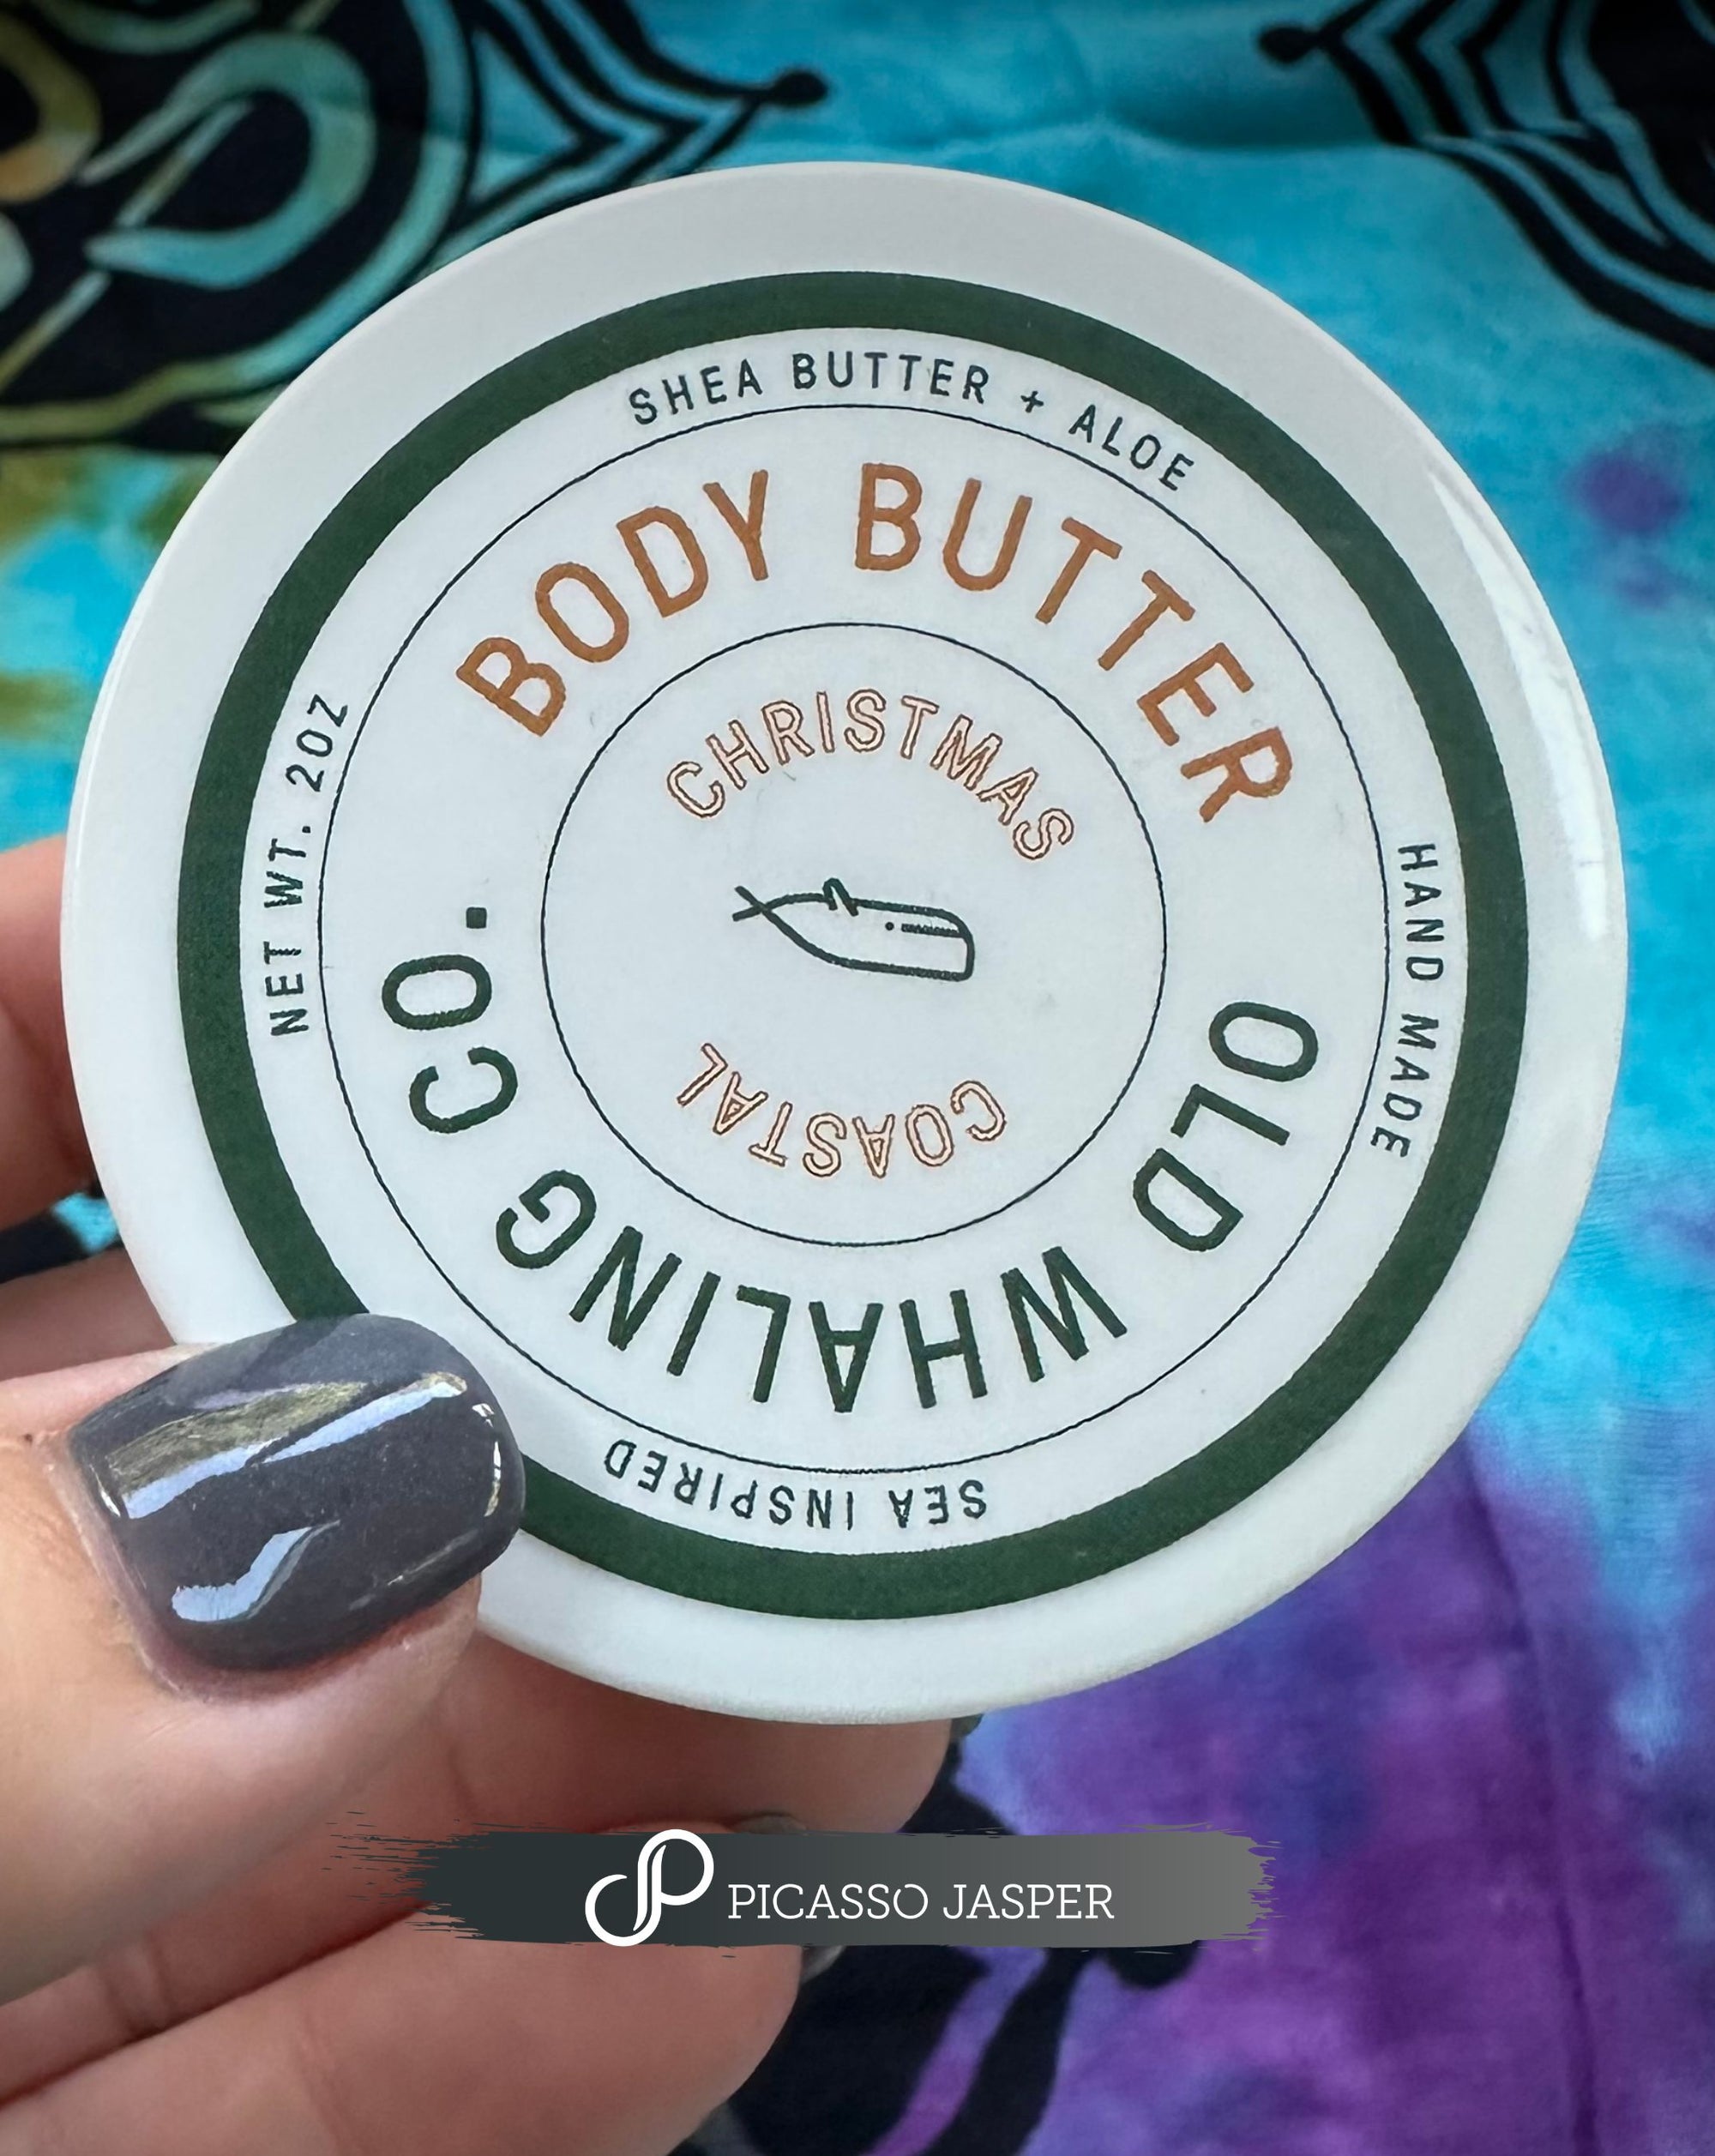 Pine Body Butter